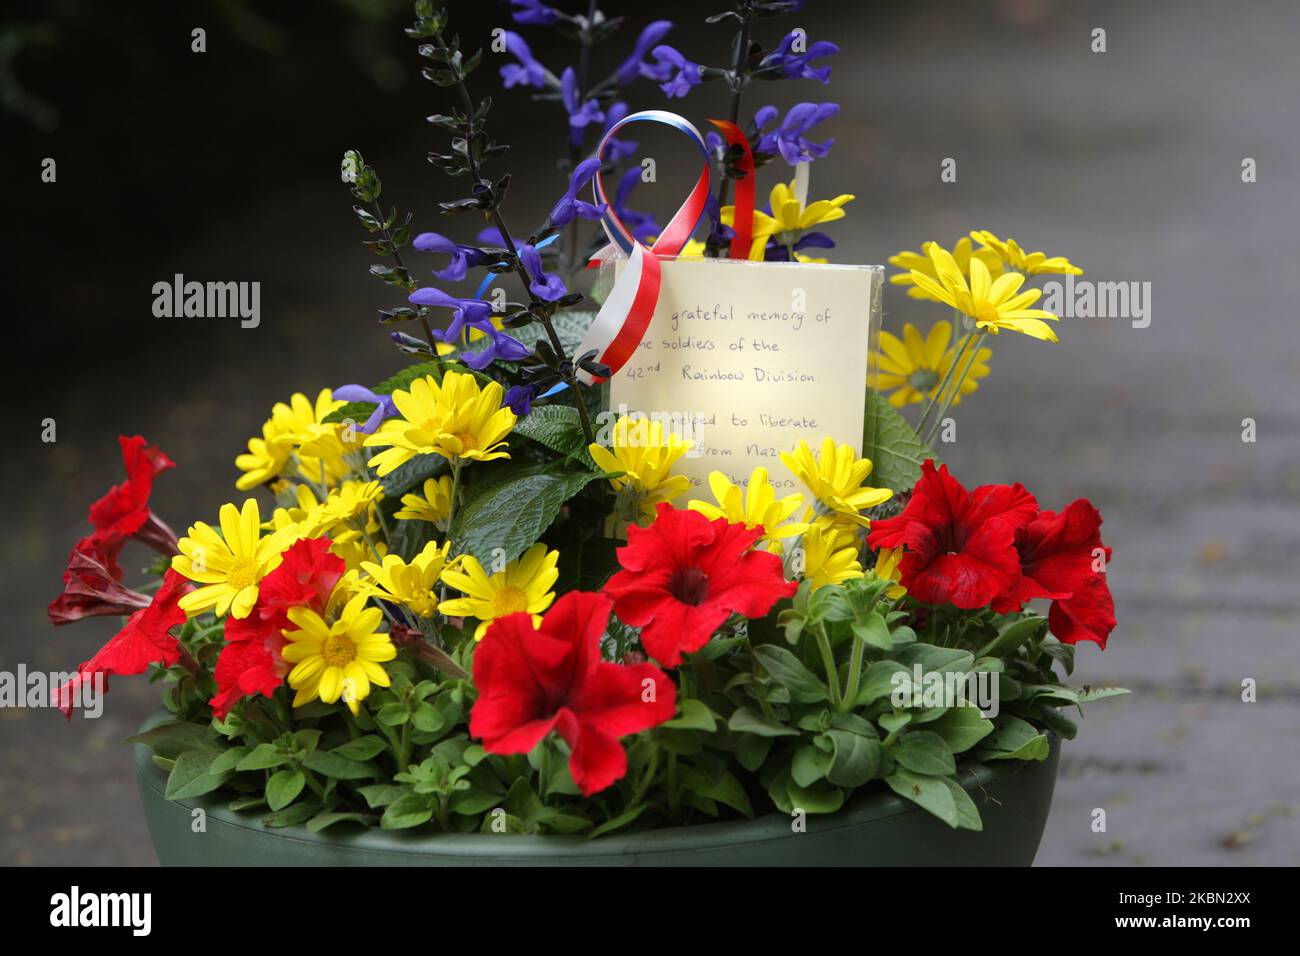 Am 29. April 2020 in Amsterdam, Niederlande, platzierte das Nationale Dachau-Denkmal zur Erinnerung an 75 Jahre Holocaust-Opfer der Coronavirus-Pandemie Blumen leer. Jedes Jahr wurden die holländischen ehemaligen Häftlinge des Konzentrationslagers Dachau, die Befreiung des Lagers durch amerikanische Einheiten, von 1933 bis 1945, insgesamt 206.000 Gefangene in Dachau untergebracht, darunter mehr als 2.000 Holländer. Offizielle Zahlen sprechen von 31.591 Todesfällen. (Foto von Paulo Amorim/NurPhoto) Stockfoto